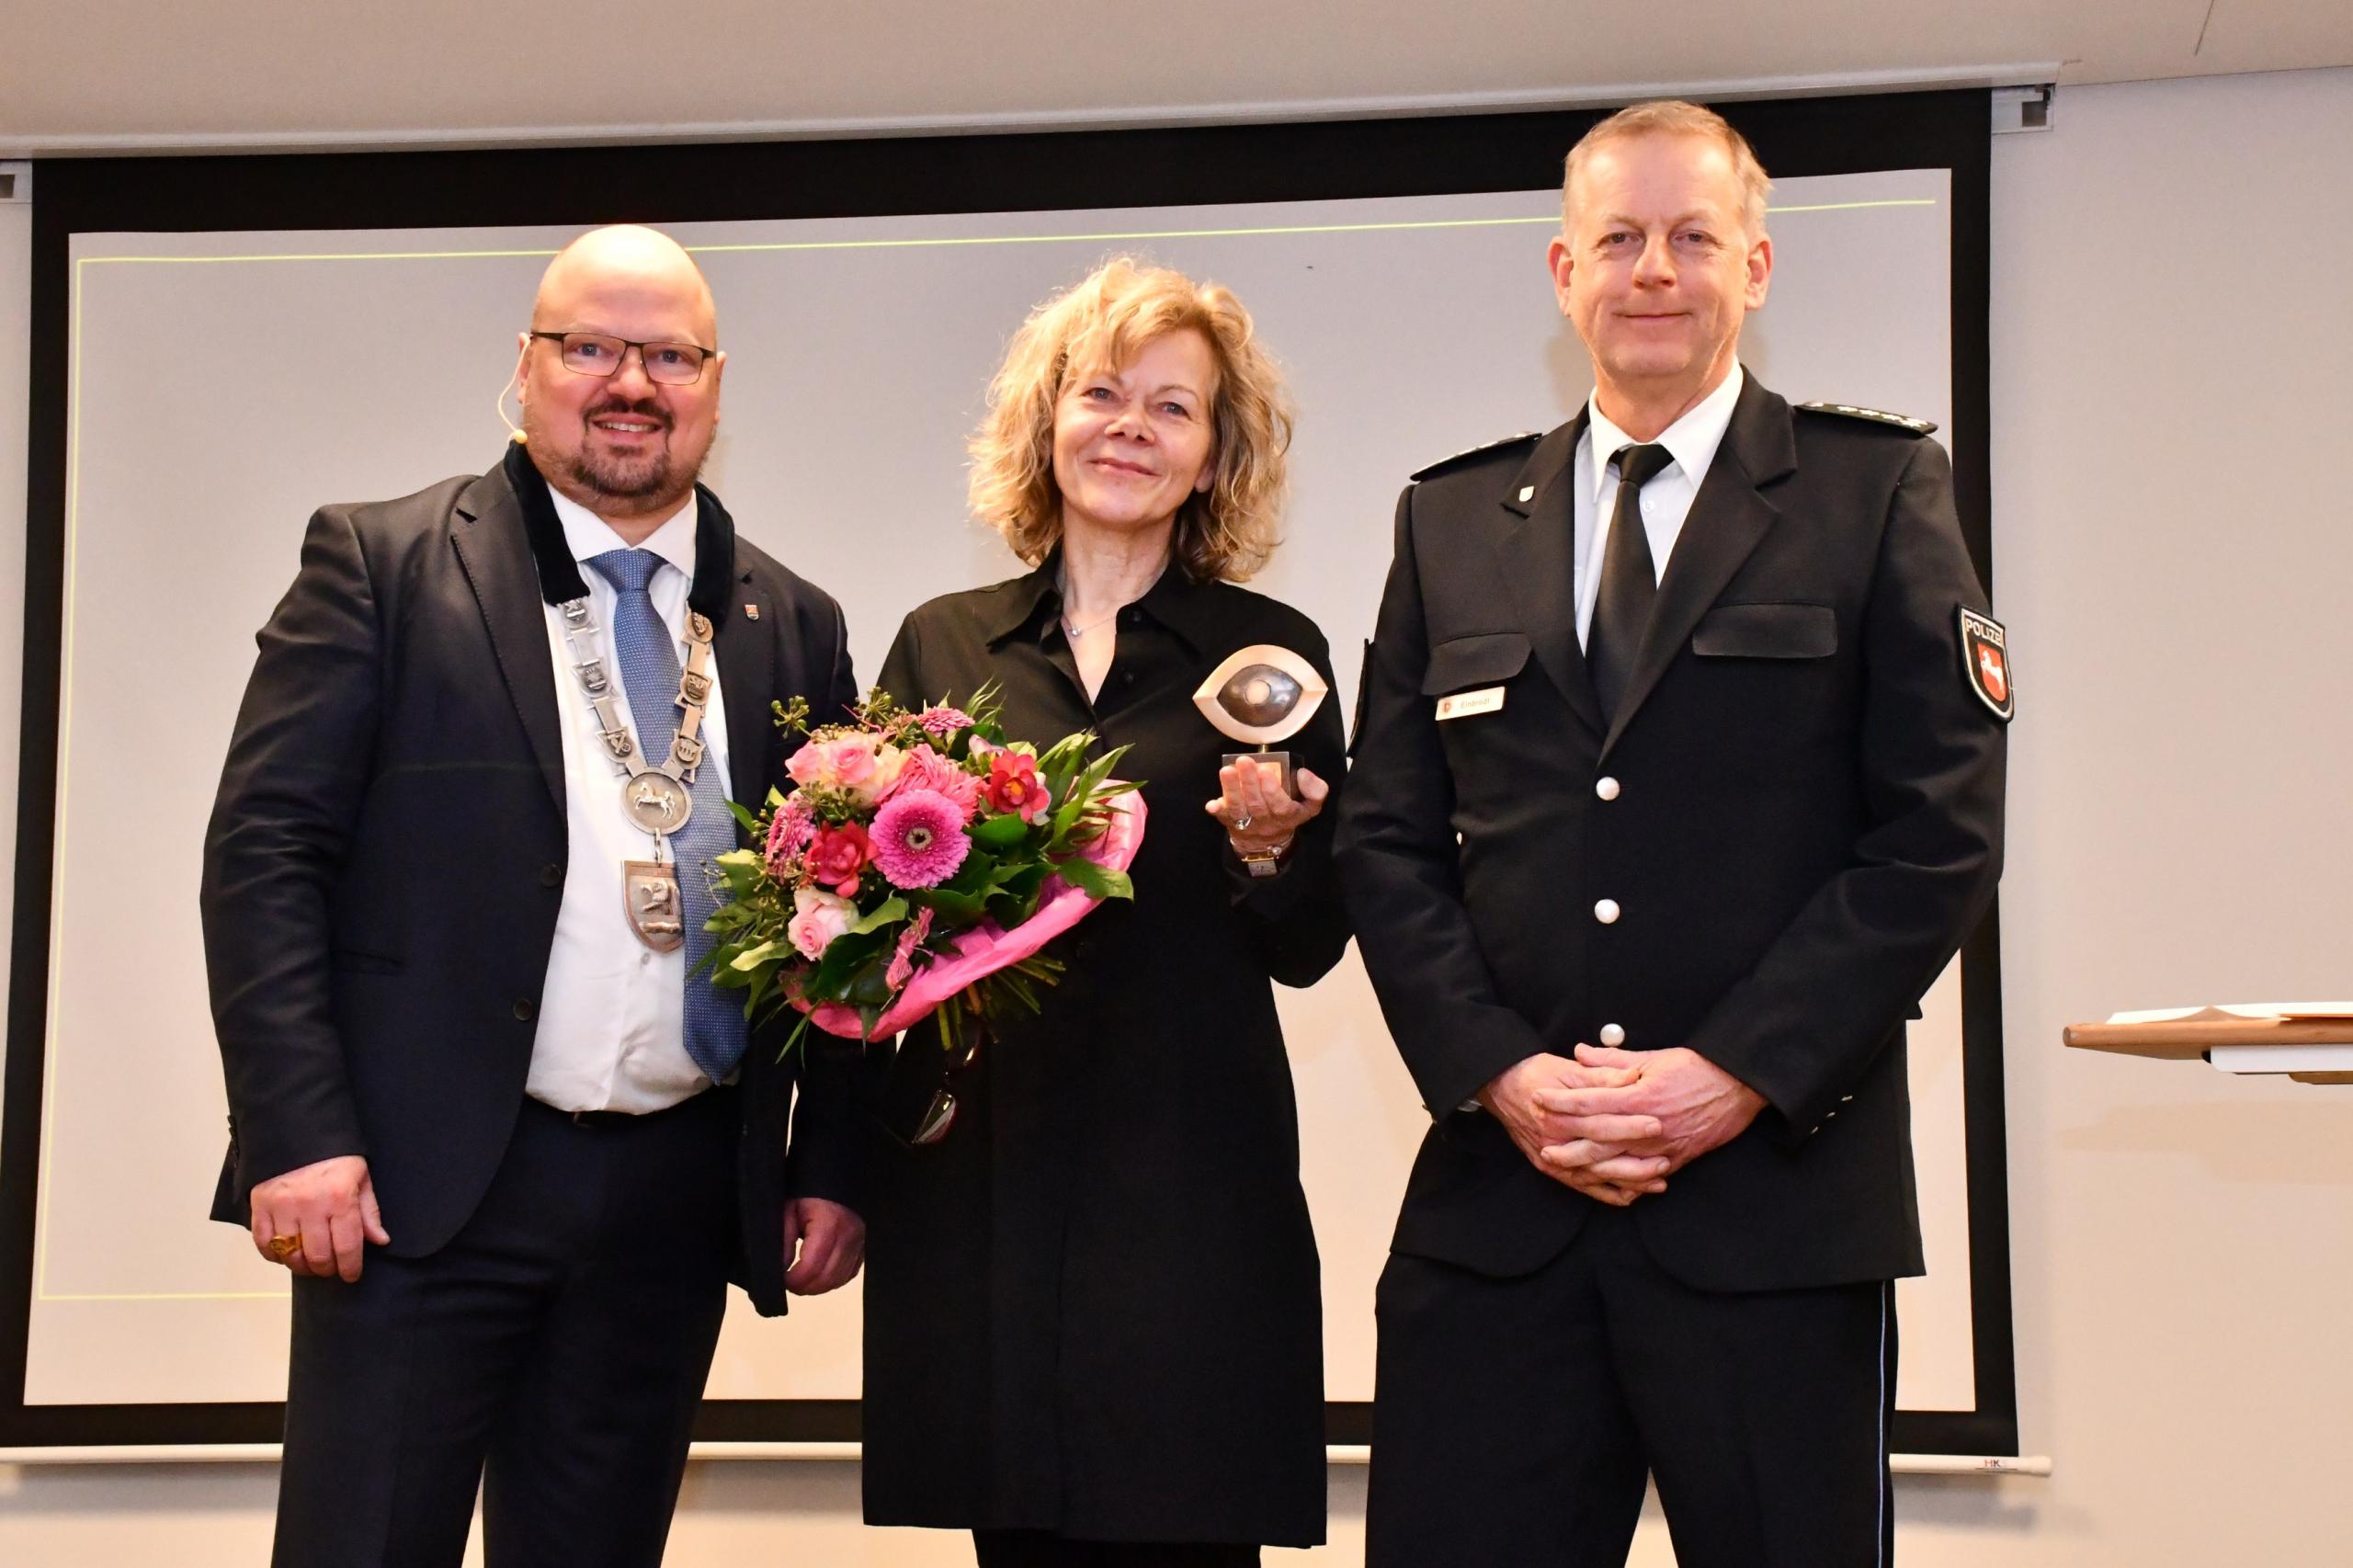 Laatzens Bürgermeister Kai Eggert, Corinna Luedtke und Leiter des Polizeikommissariats Laatzen stehen auf einer Bühne. Corinna Luedtke hält den Couragepreis in Form eines Auges sowie einen Blumenstrauß in den Händen. Alle drei lächeln in die Kamera.